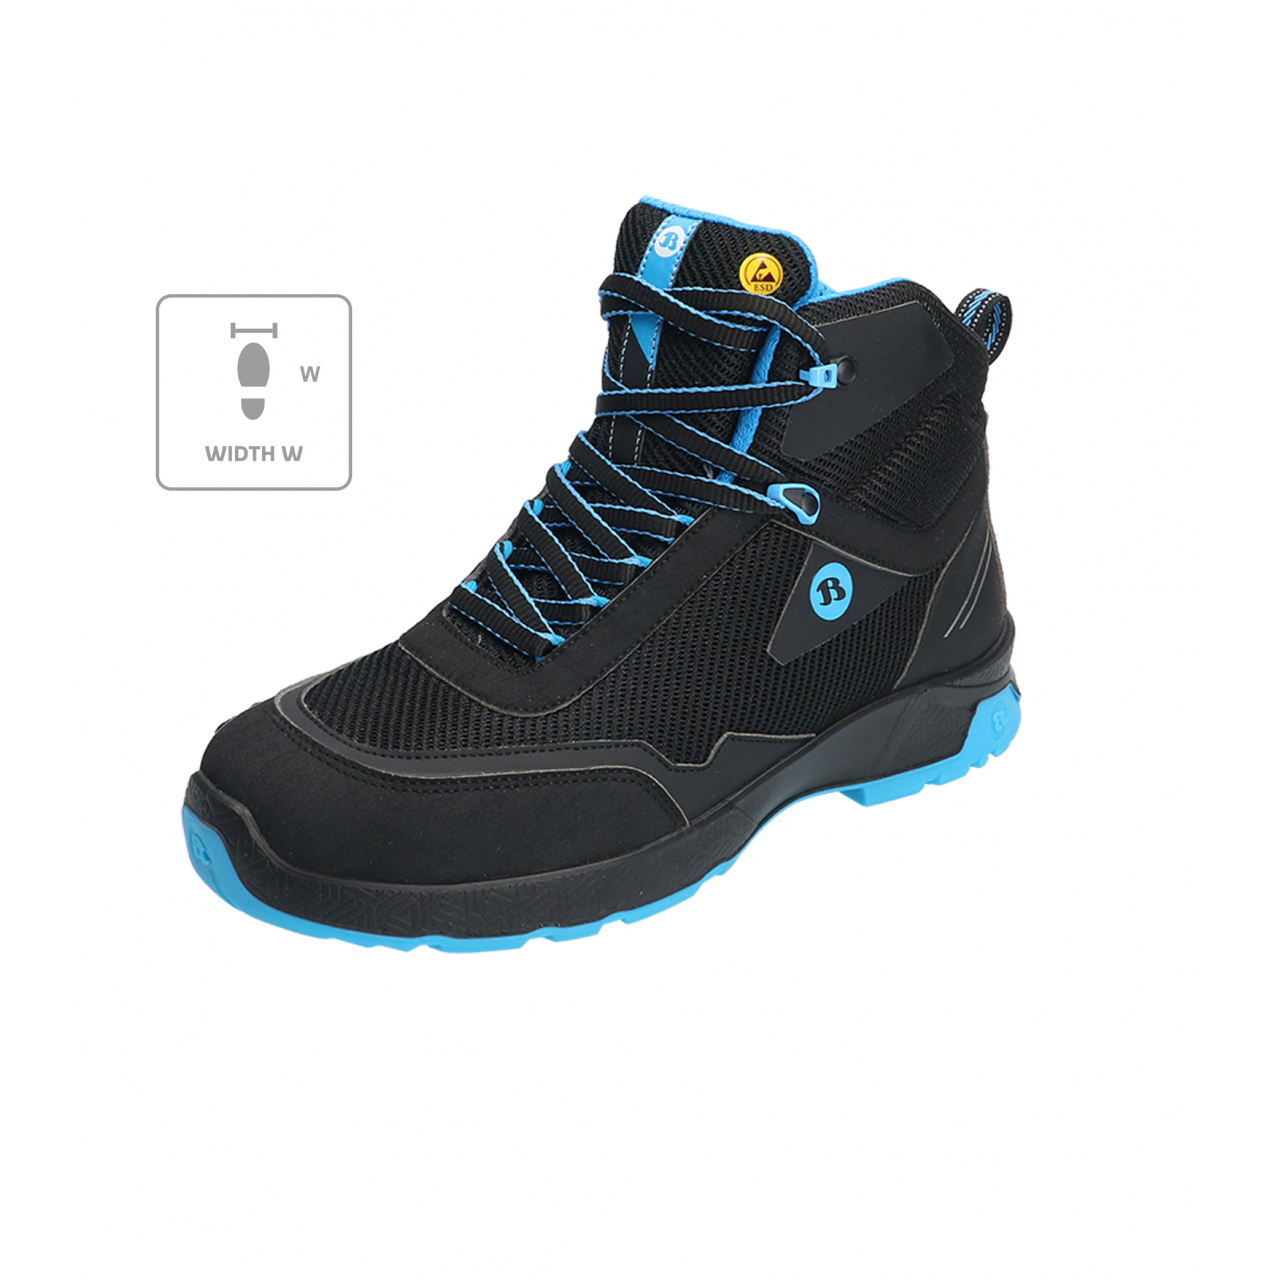 Kotníkové boty Bata Industrials Summ One W - černé-modré, 40